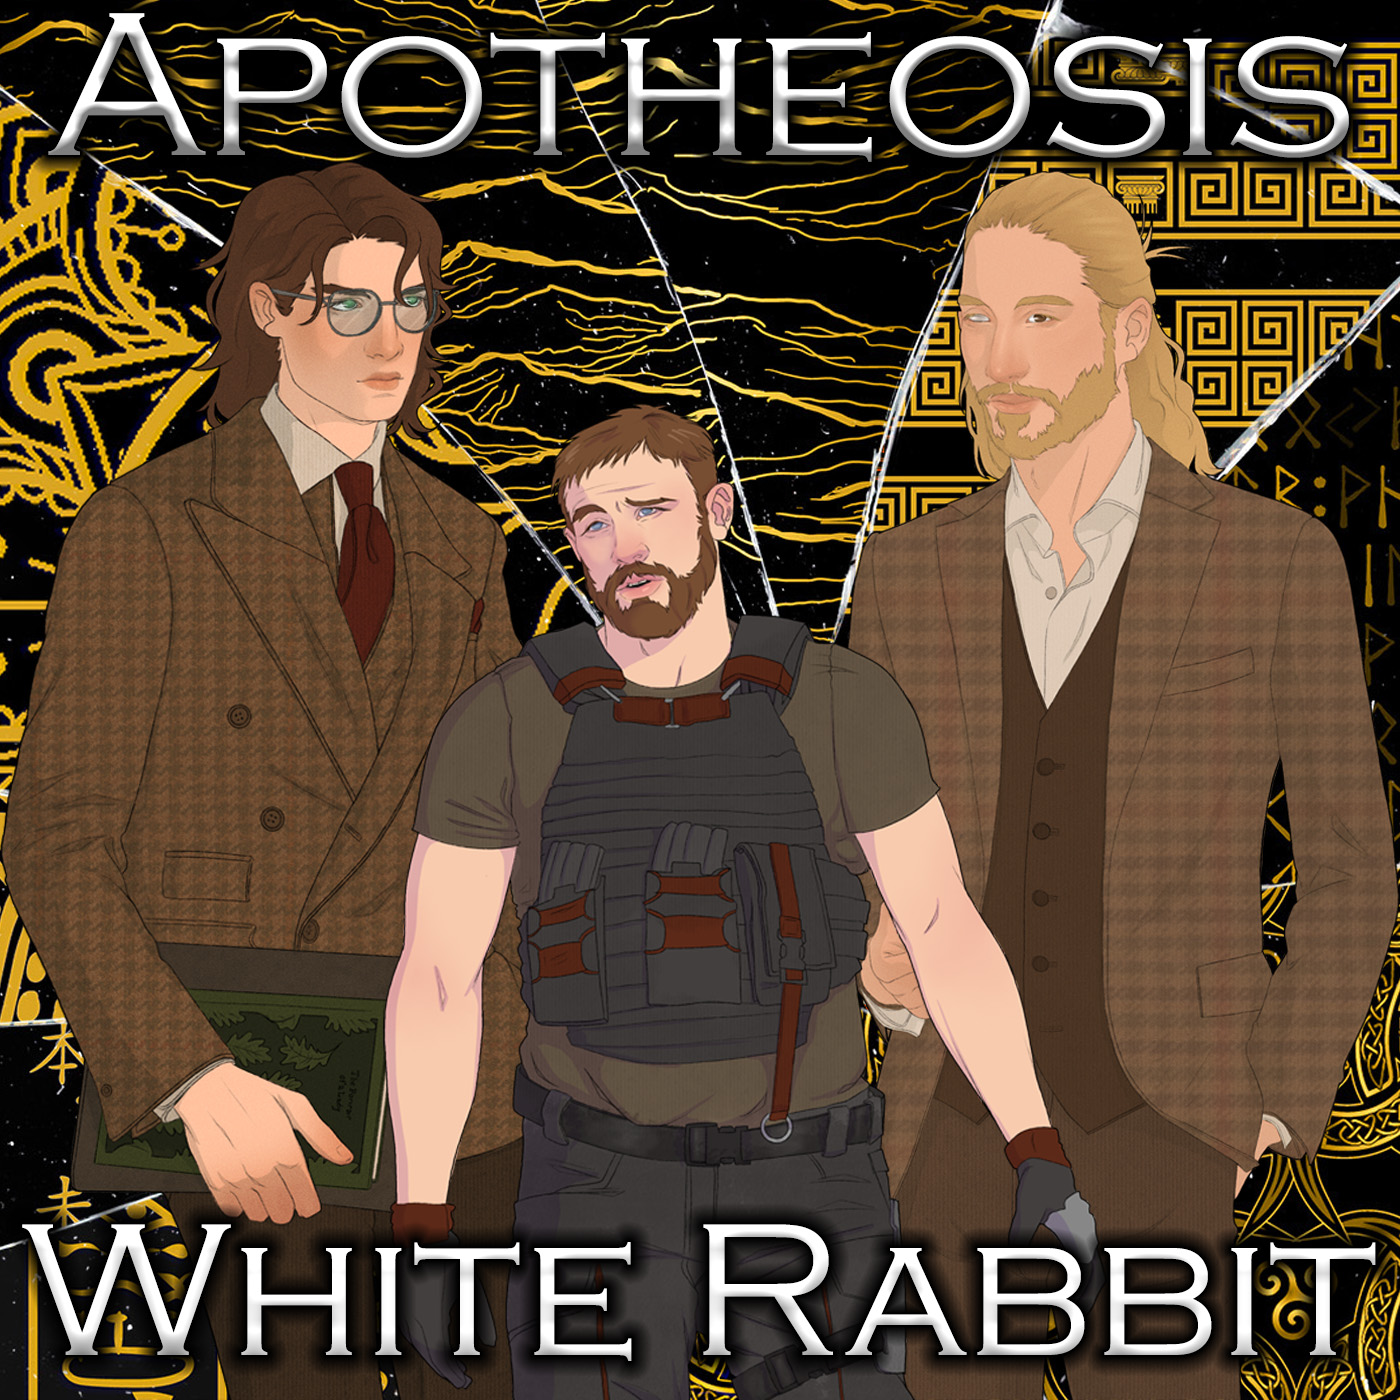 S1 Ep 3: White Rabbit